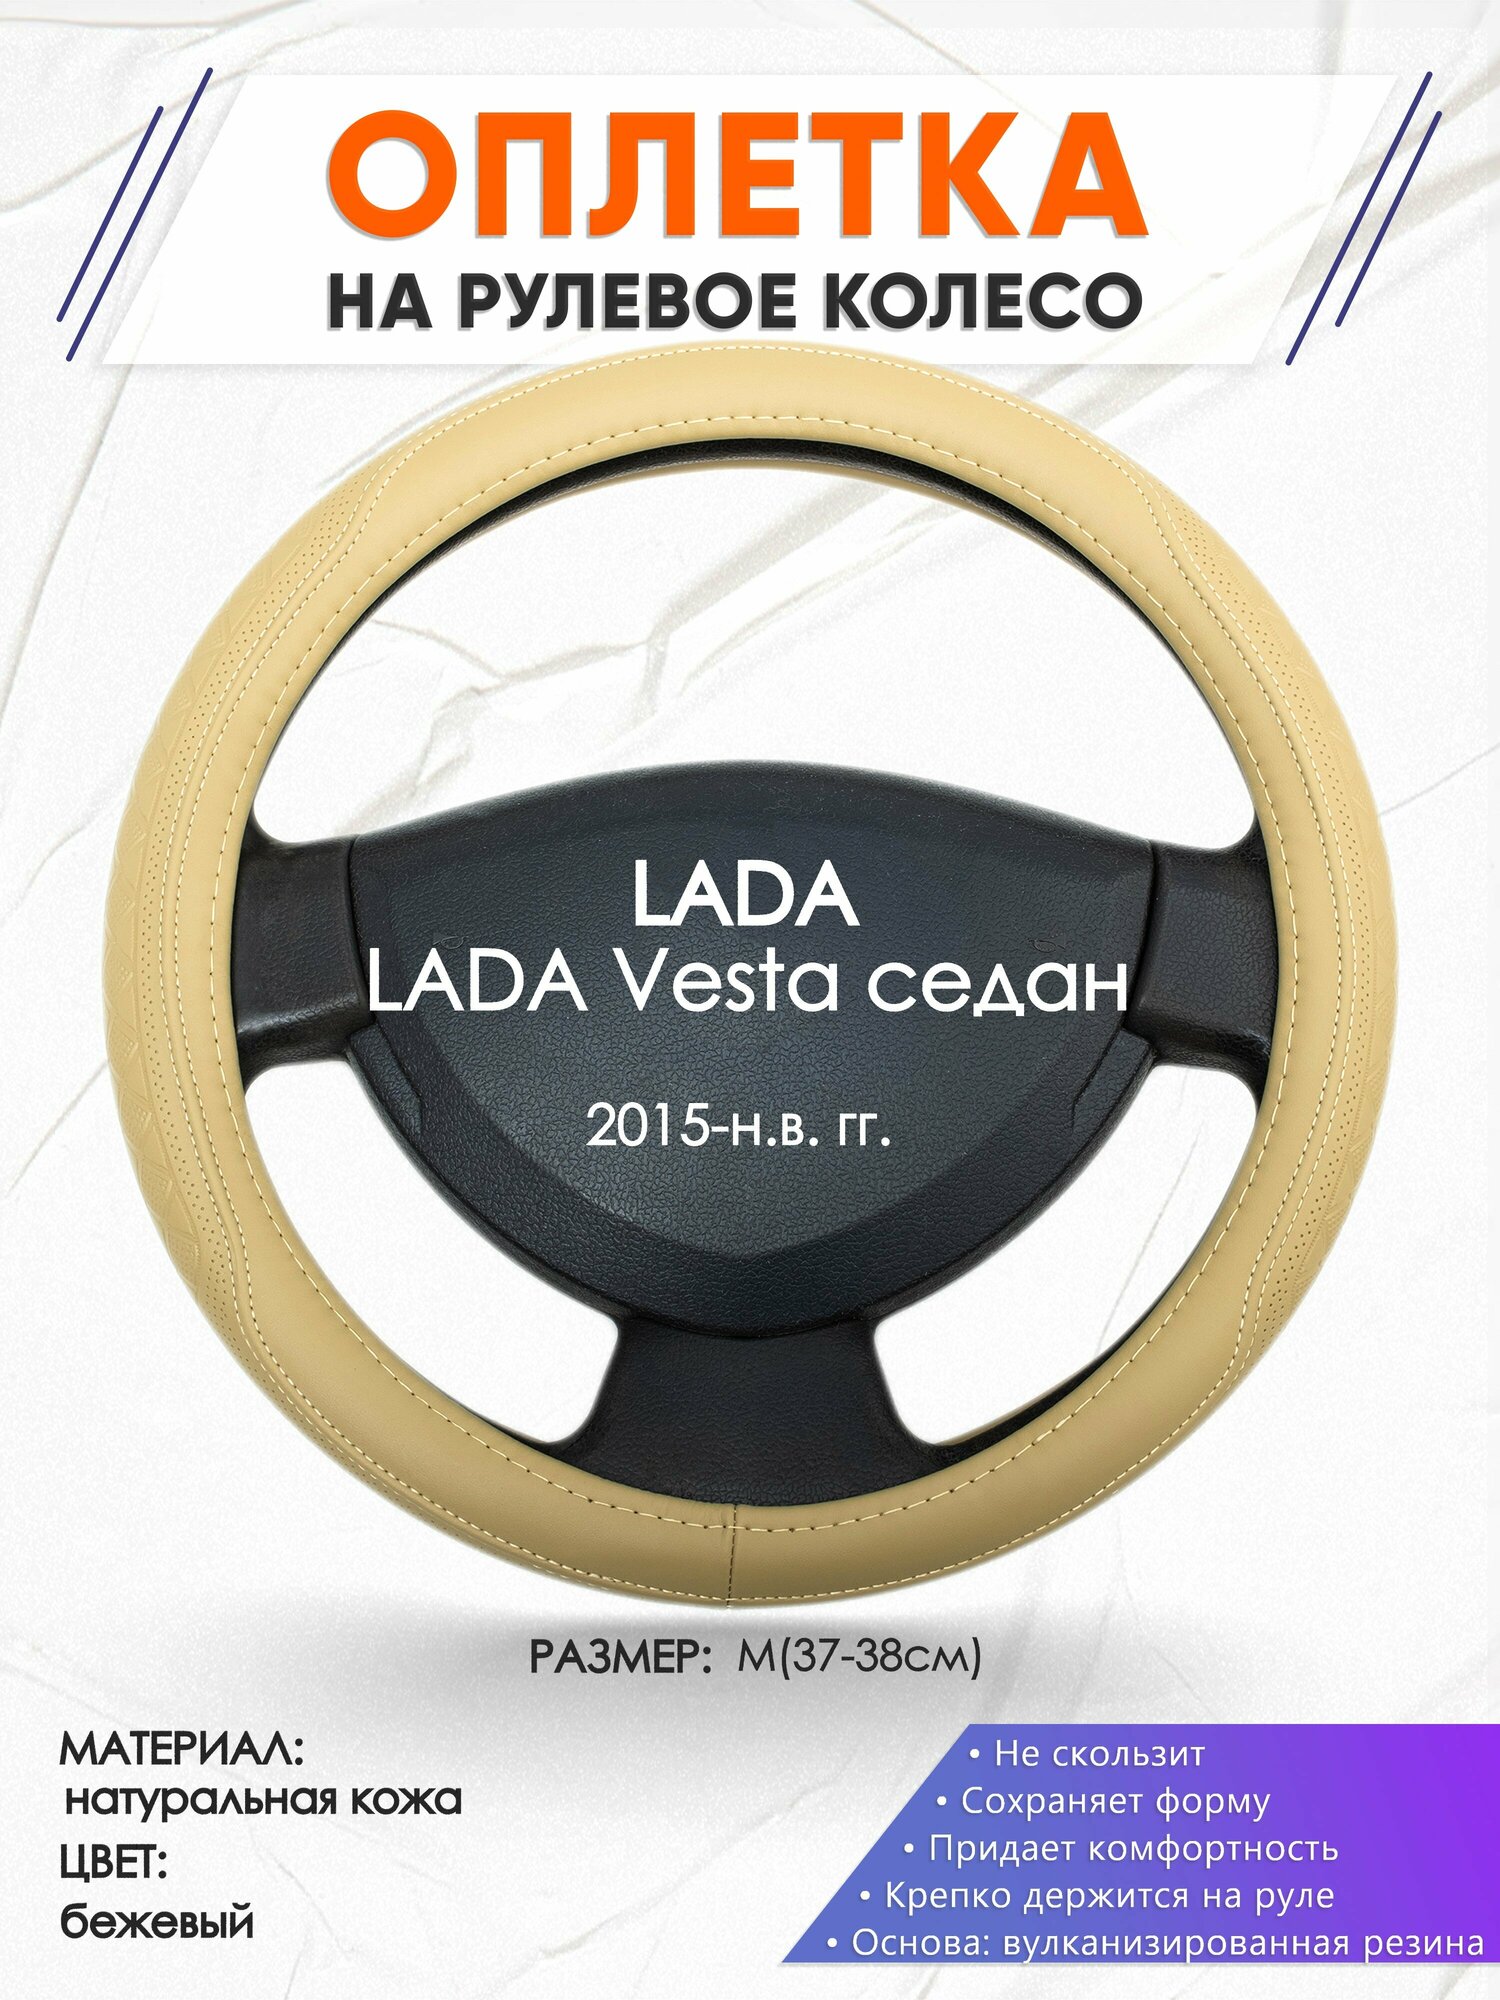 Оплетка наруль для LADA Vesta седан(Лада Веста) 2015-н. в. годов выпуска, размер M(37-38см), Натуральная кожа 91